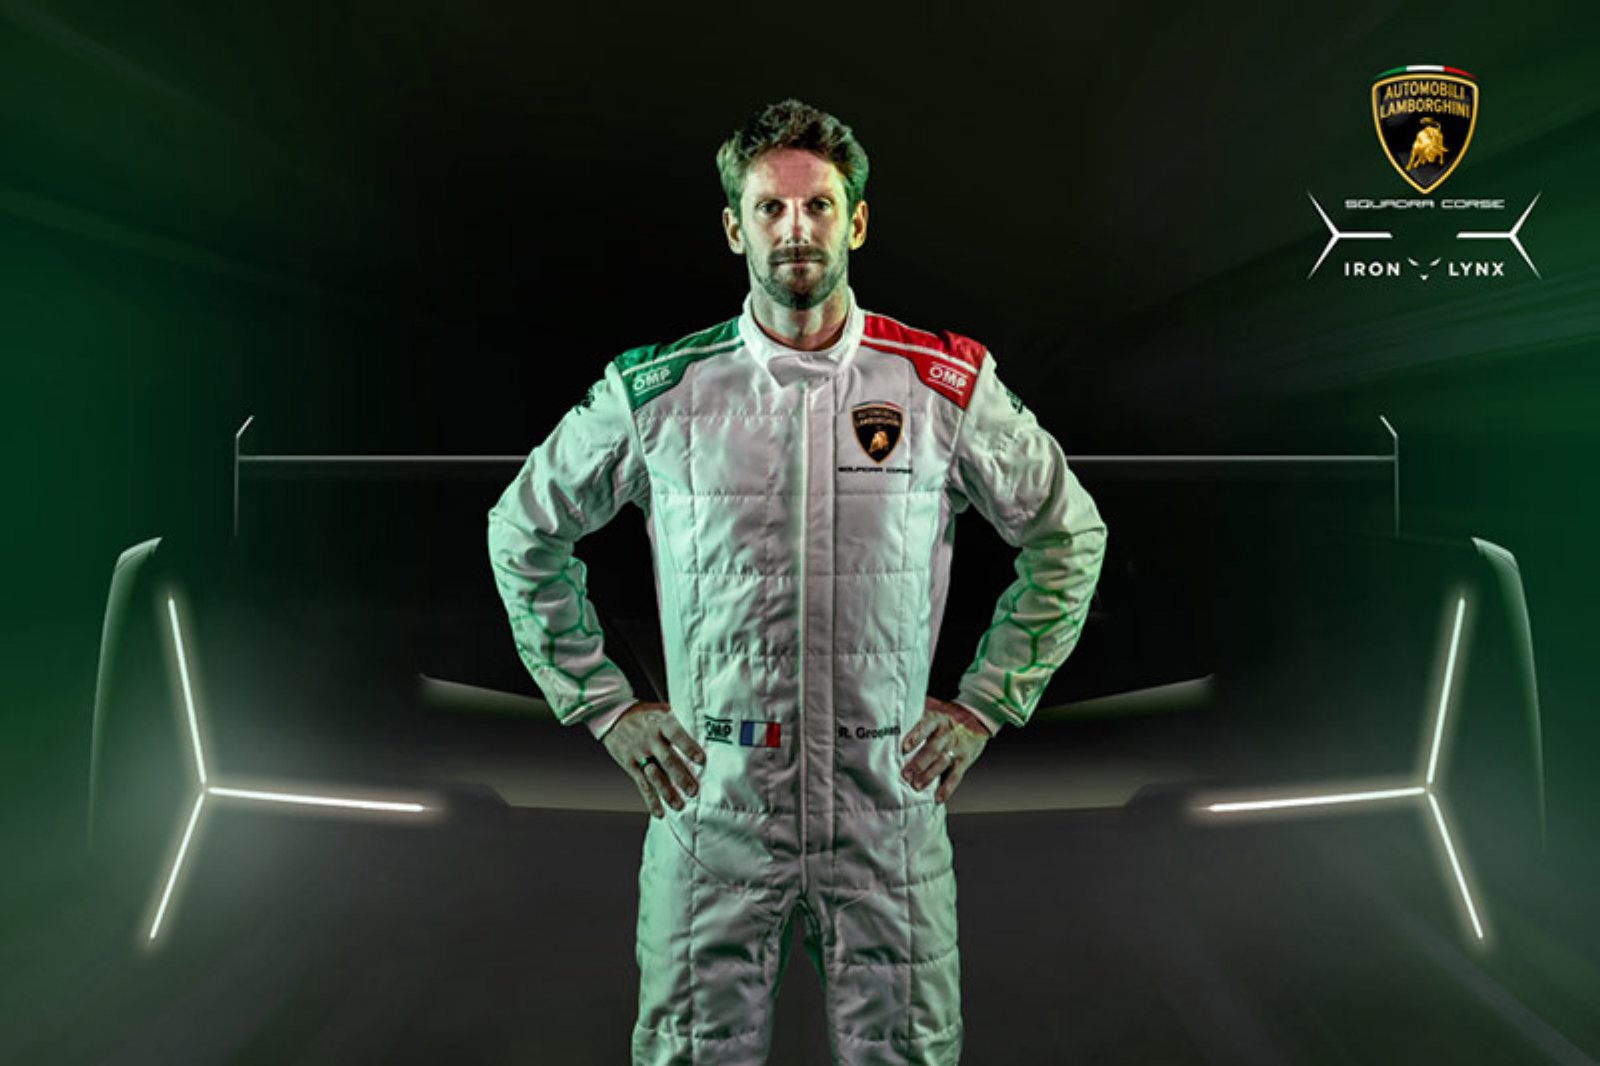 Lamborghini Squadra Corse presenta a su nuevo piloto oficial